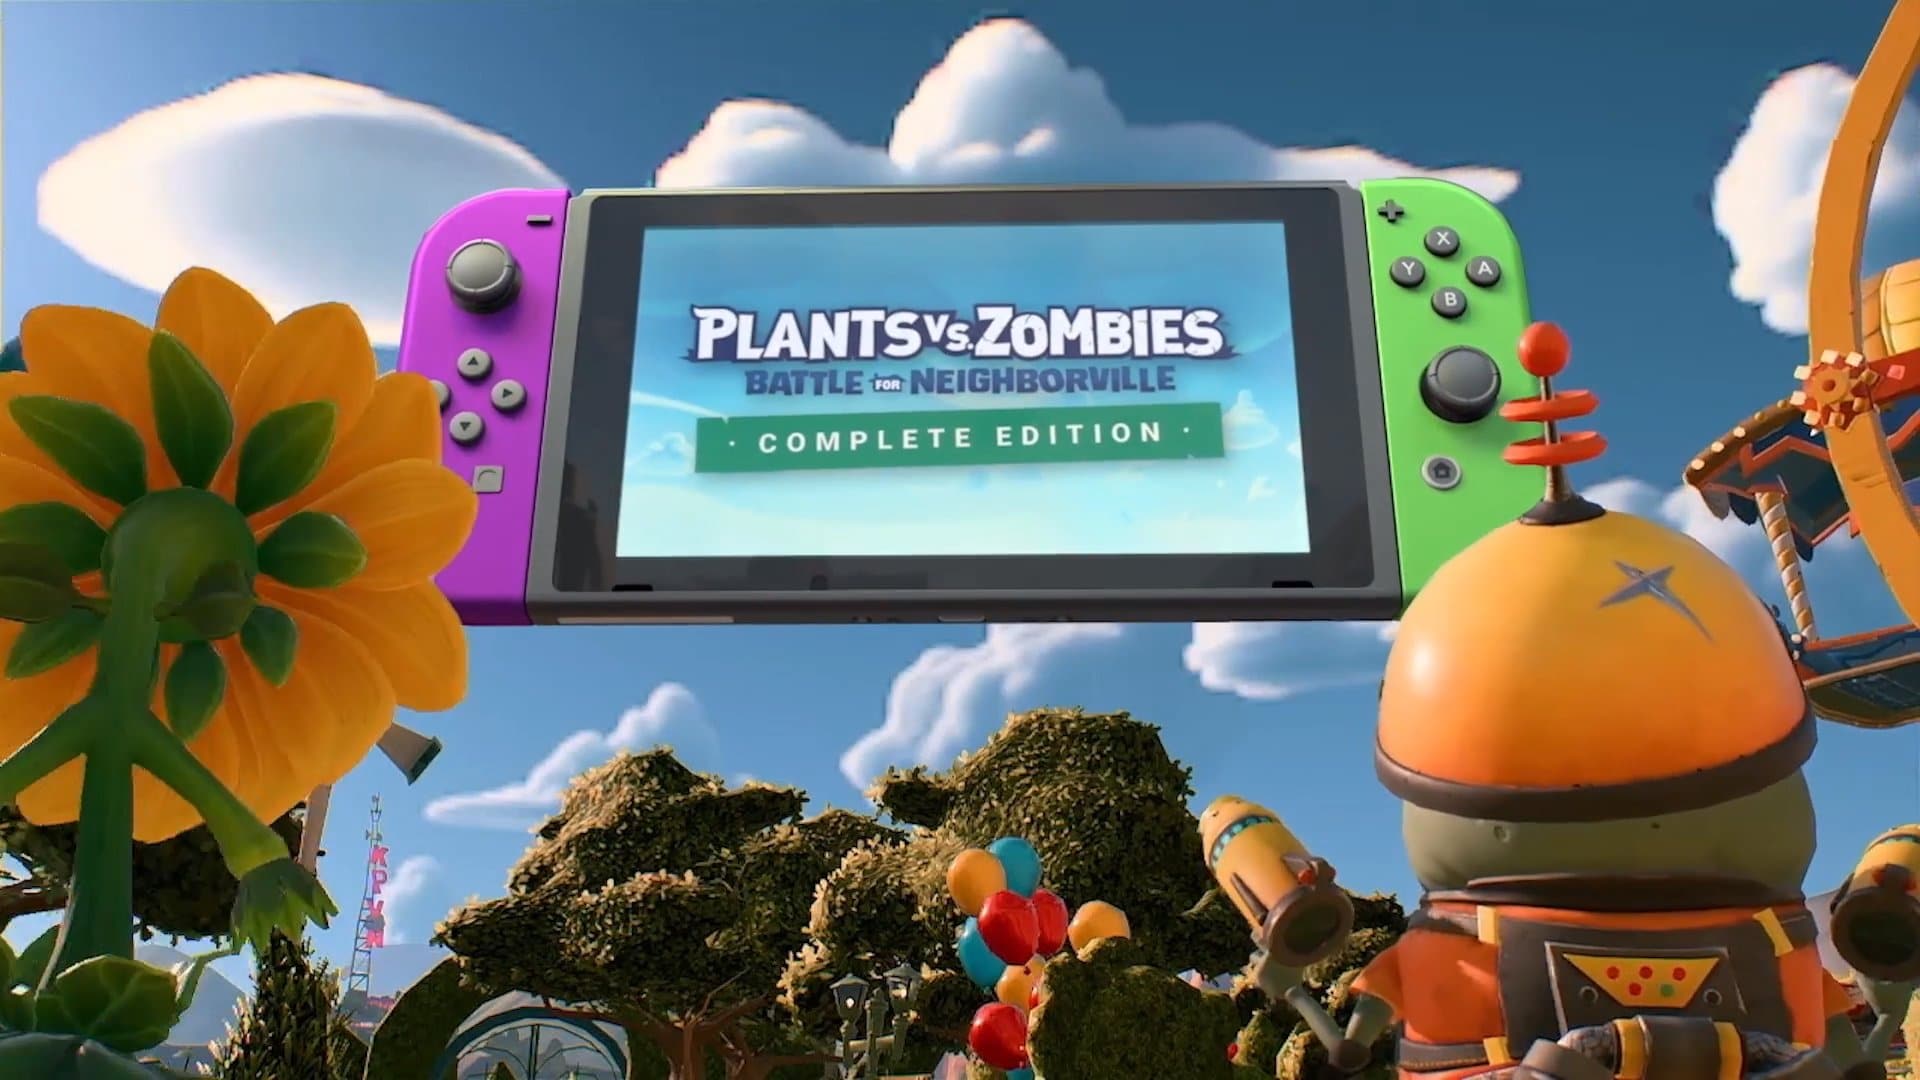 Plants vs. Zombies: Battle for Neighborville – Complete Edition podría allanar el camino para mayores y mejores títulos de EA que usen el motor Frostbite en Switch